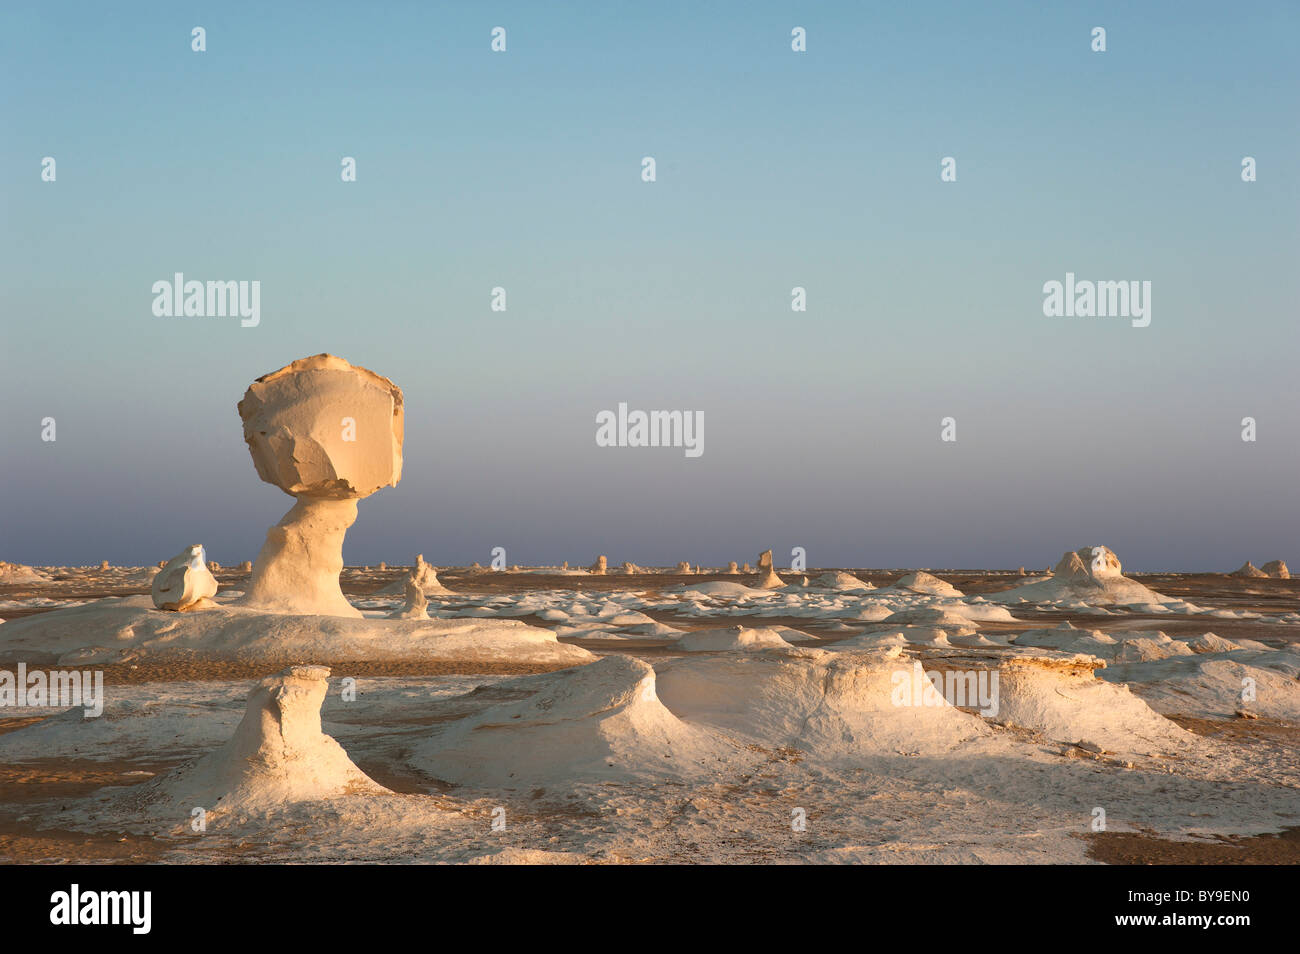 Limestone formations in the evening light, White Desert National Park, Libyan Desert, Sahara, Egypt, North Africa Stock Photo